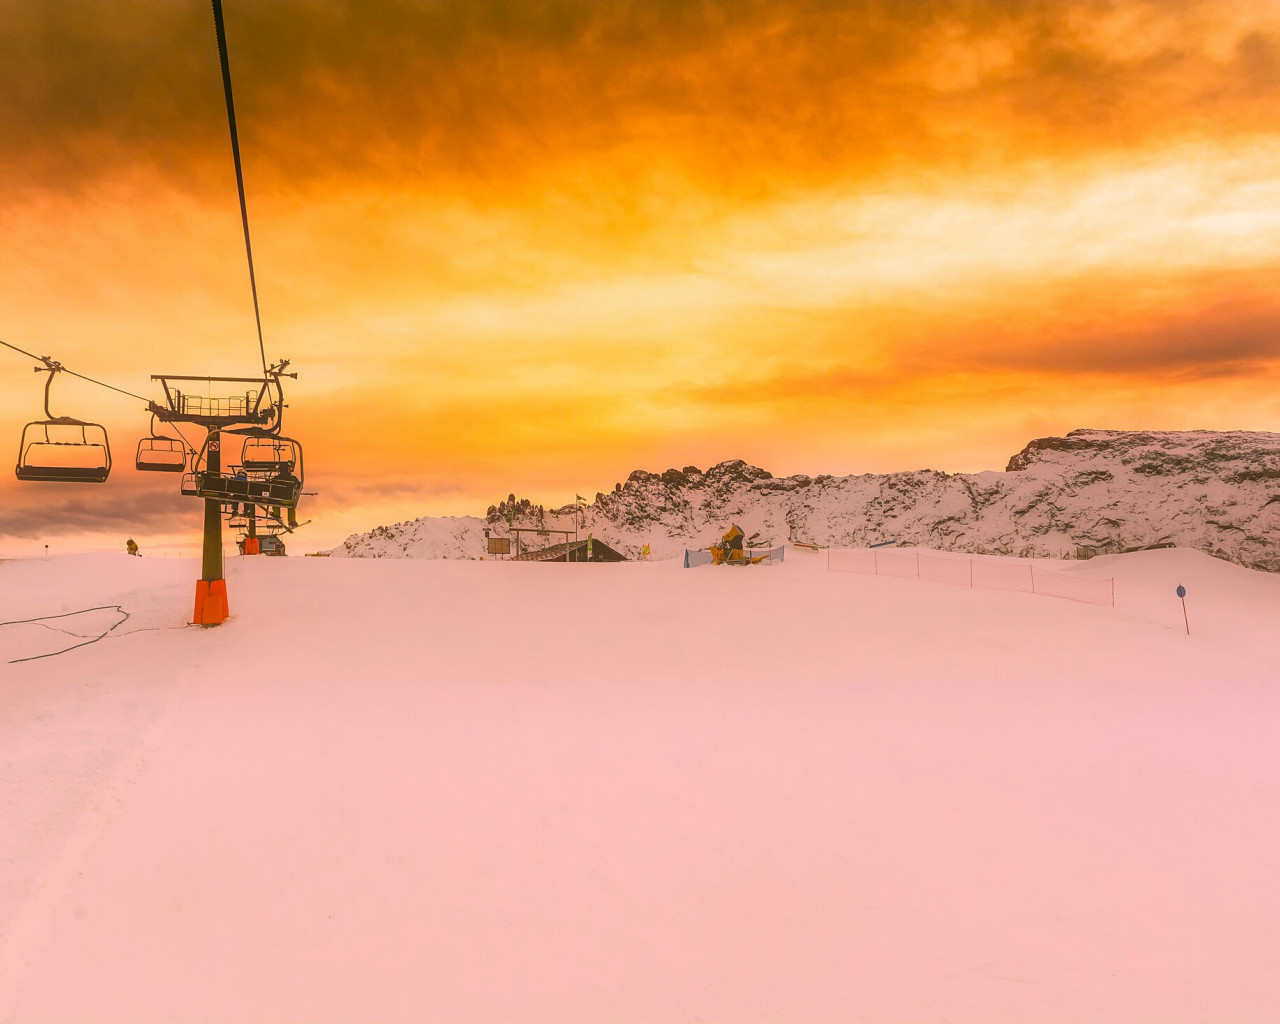 Włochy i wyciąg narciarski w górach o zachodzie słońca